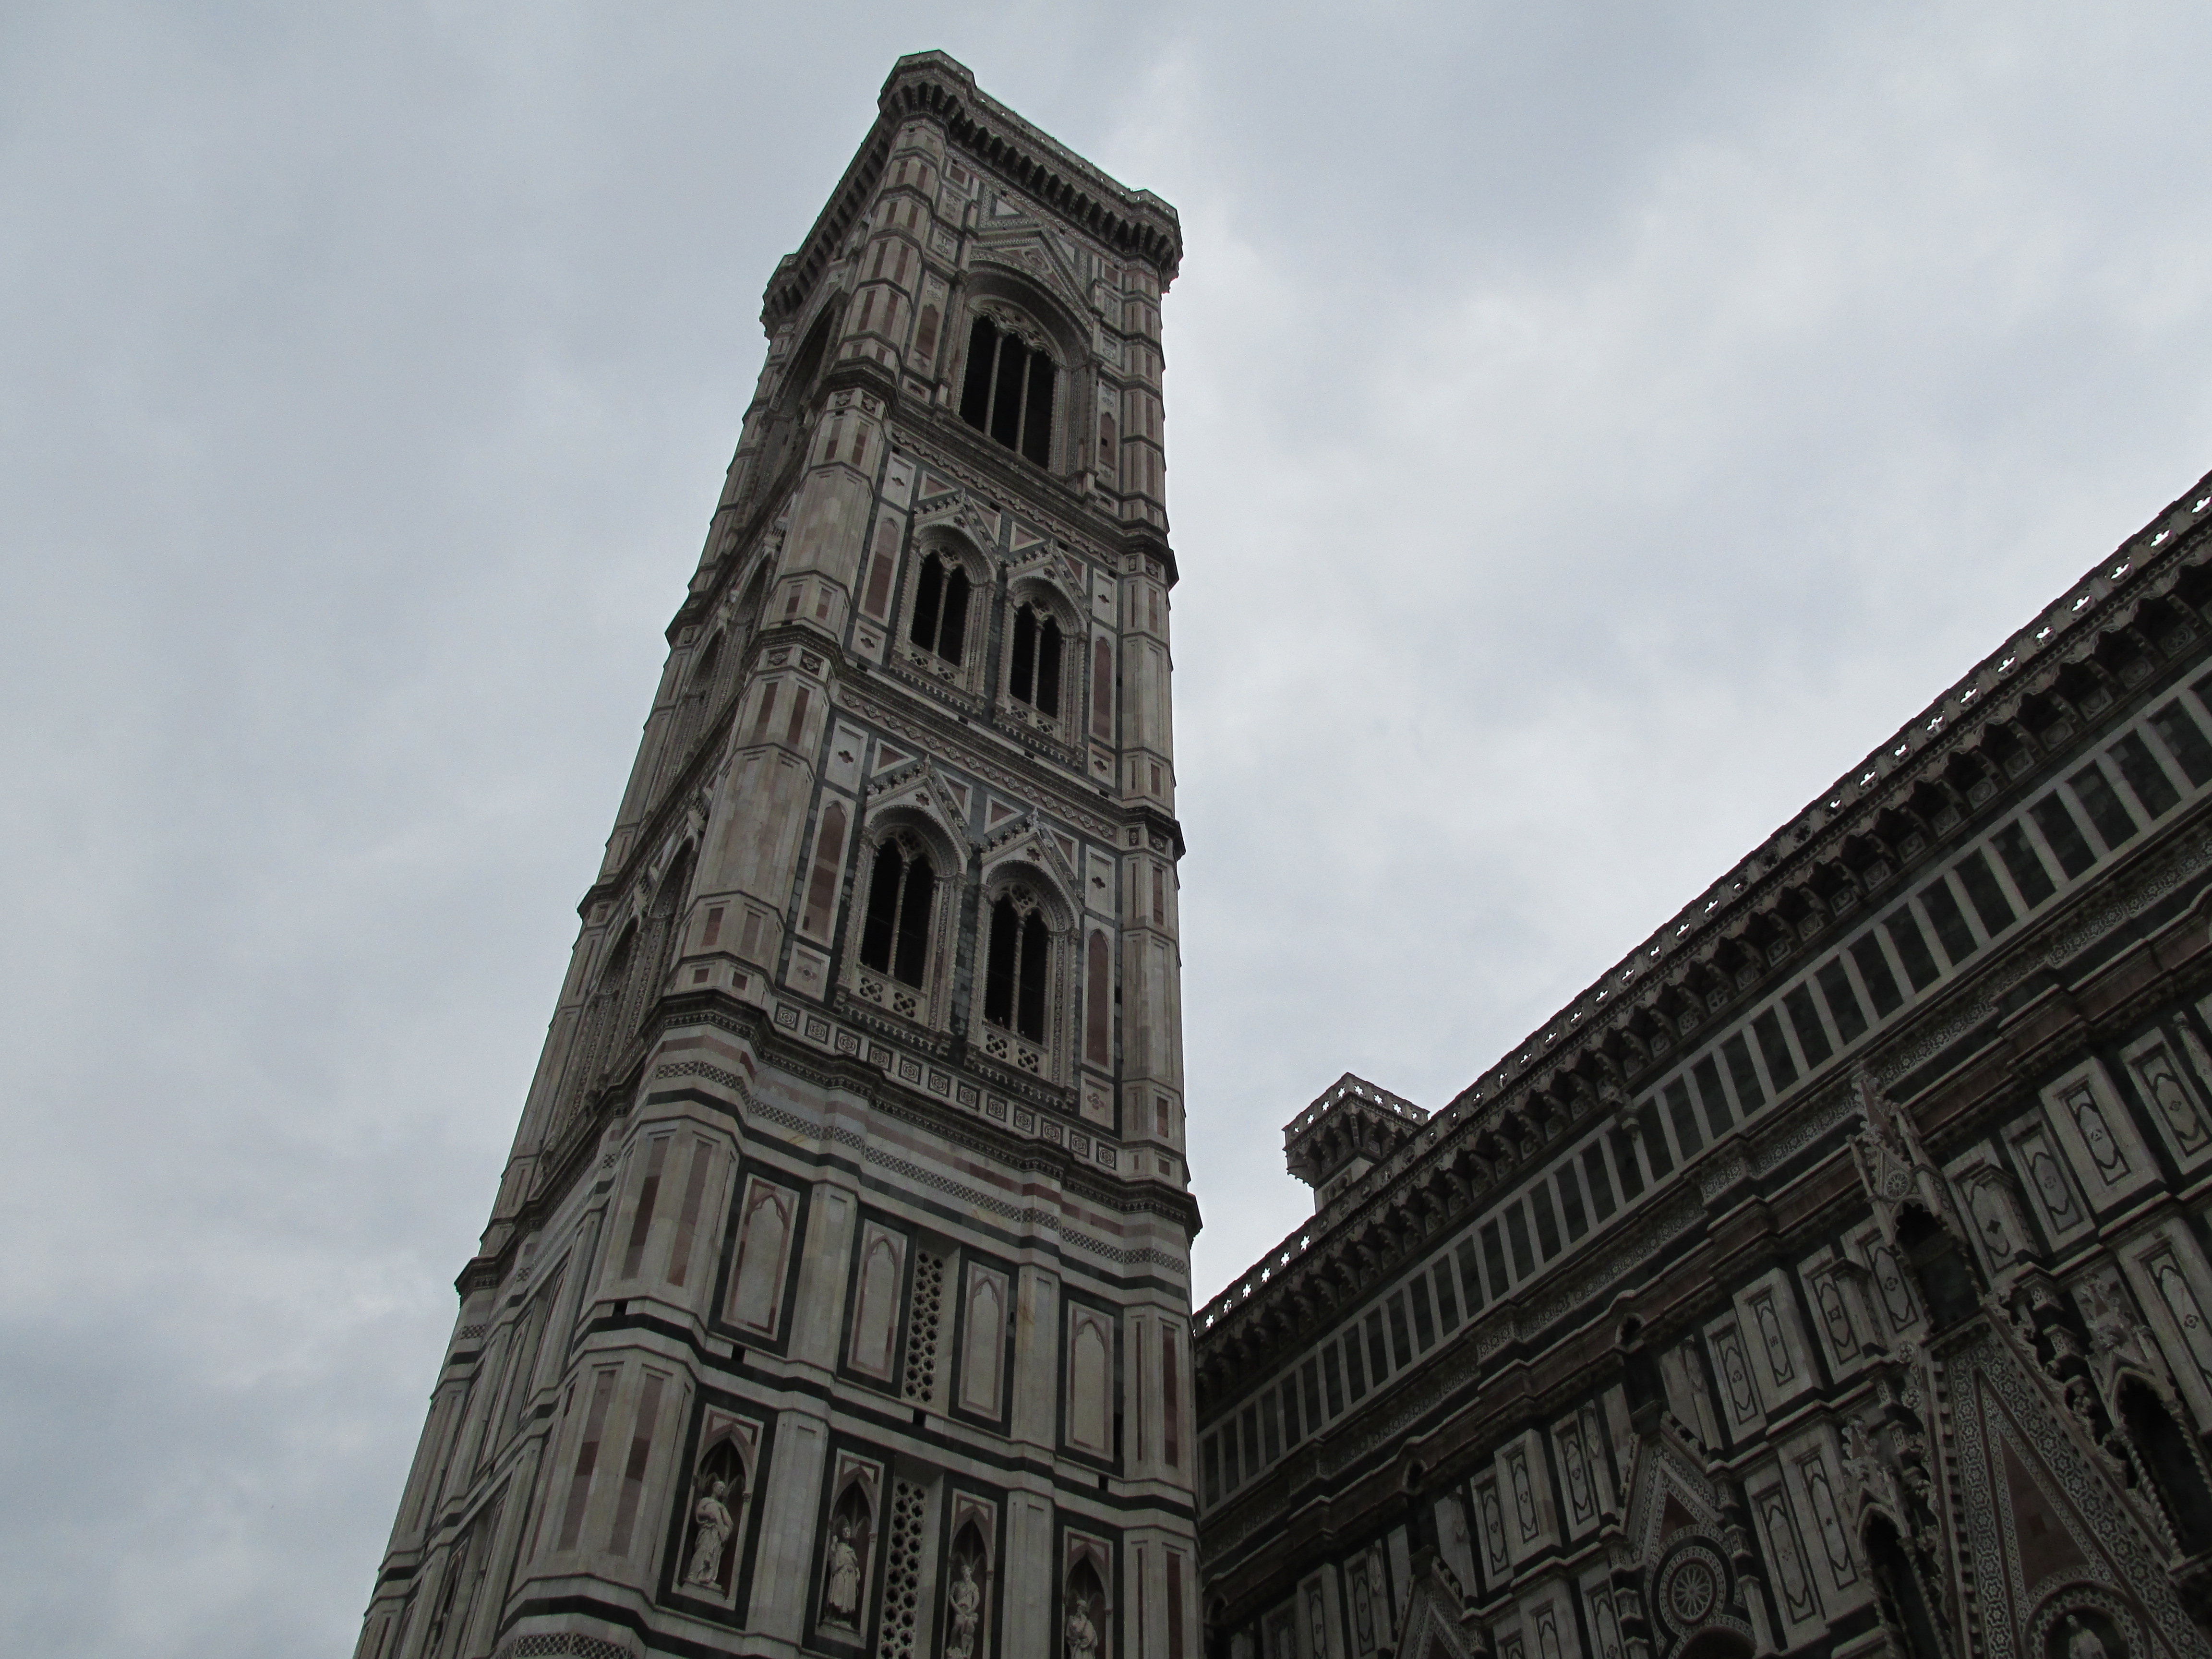 img 2851 - Visitando la Catedral Santa Maria del Fiore de Florencia II/III